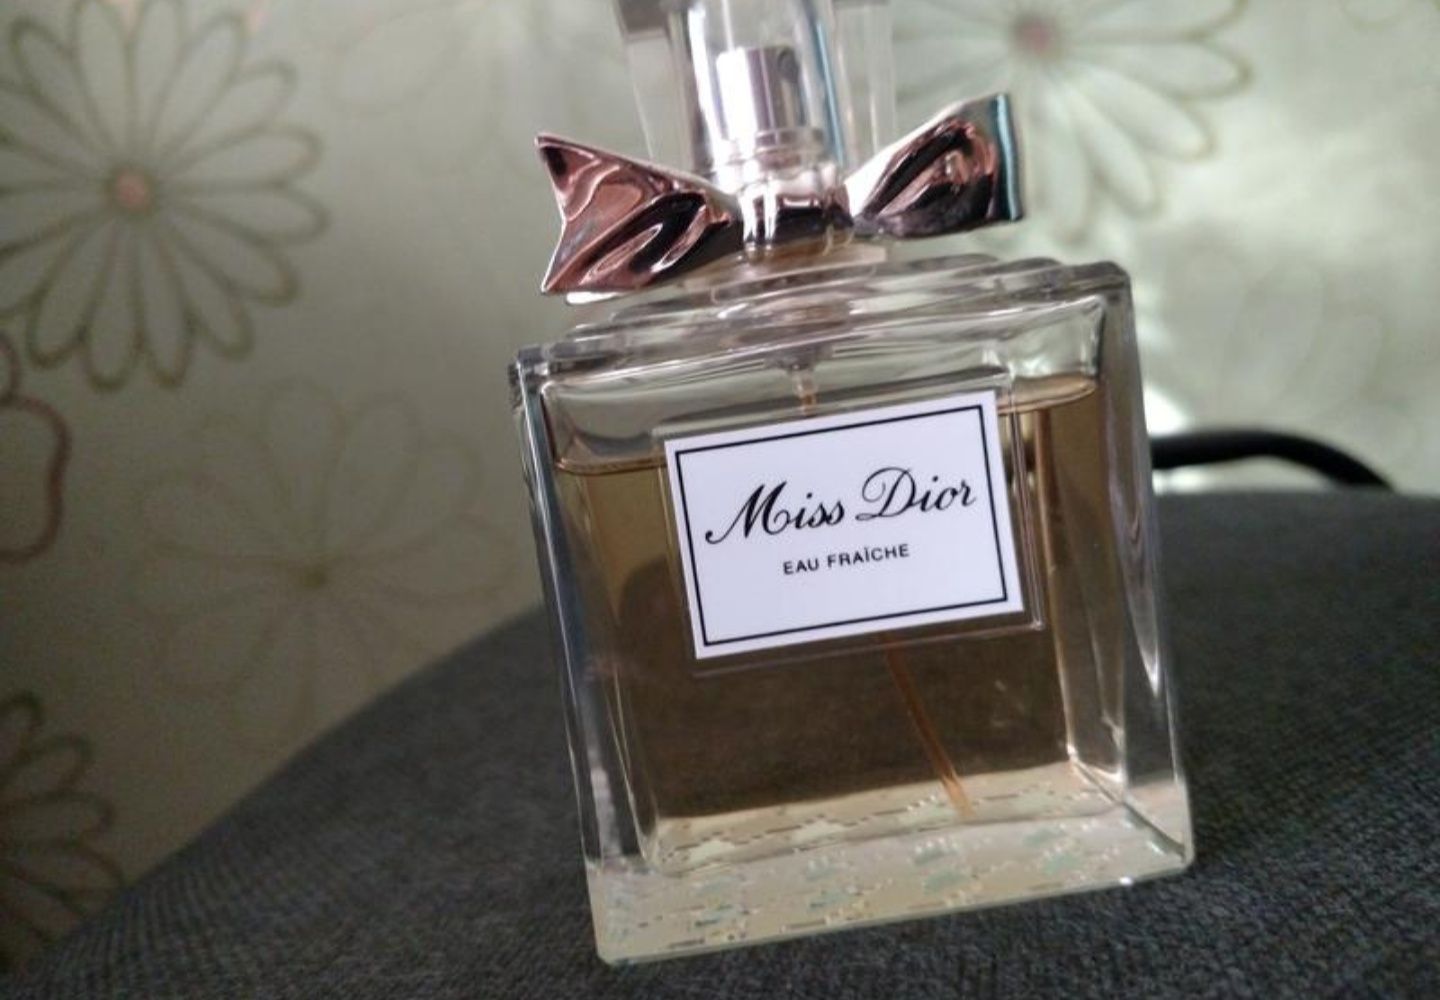 Miss dior lee parfym,Miss dior sherie lee